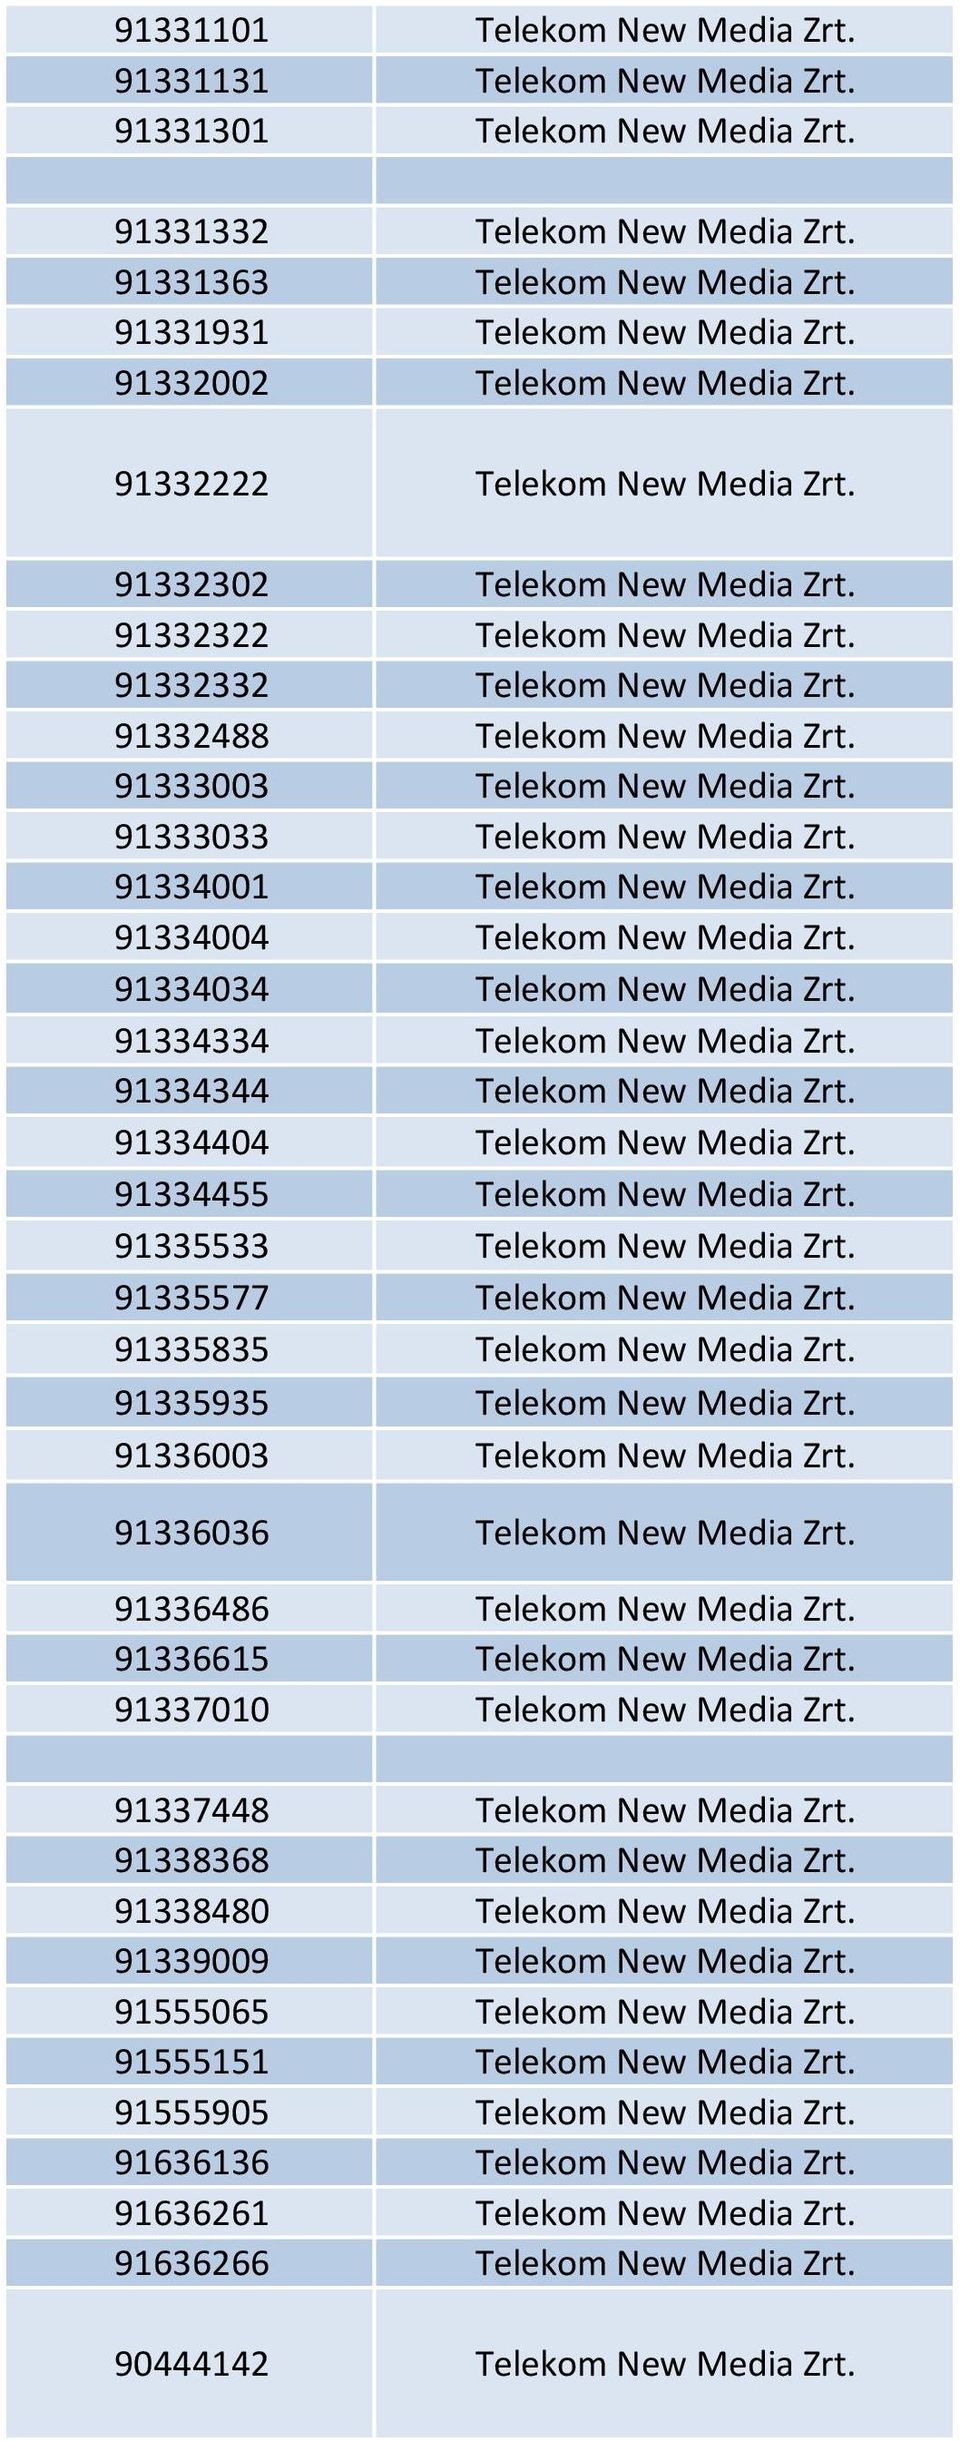 91333003 Telekom New Media Zrt. 91333033 Telekom New Media Zrt. 91334001 Telekom New Media Zrt. 91334004 Telekom New Media Zrt. 91334034 Telekom New Media Zrt. 91334334 Telekom New Media Zrt.